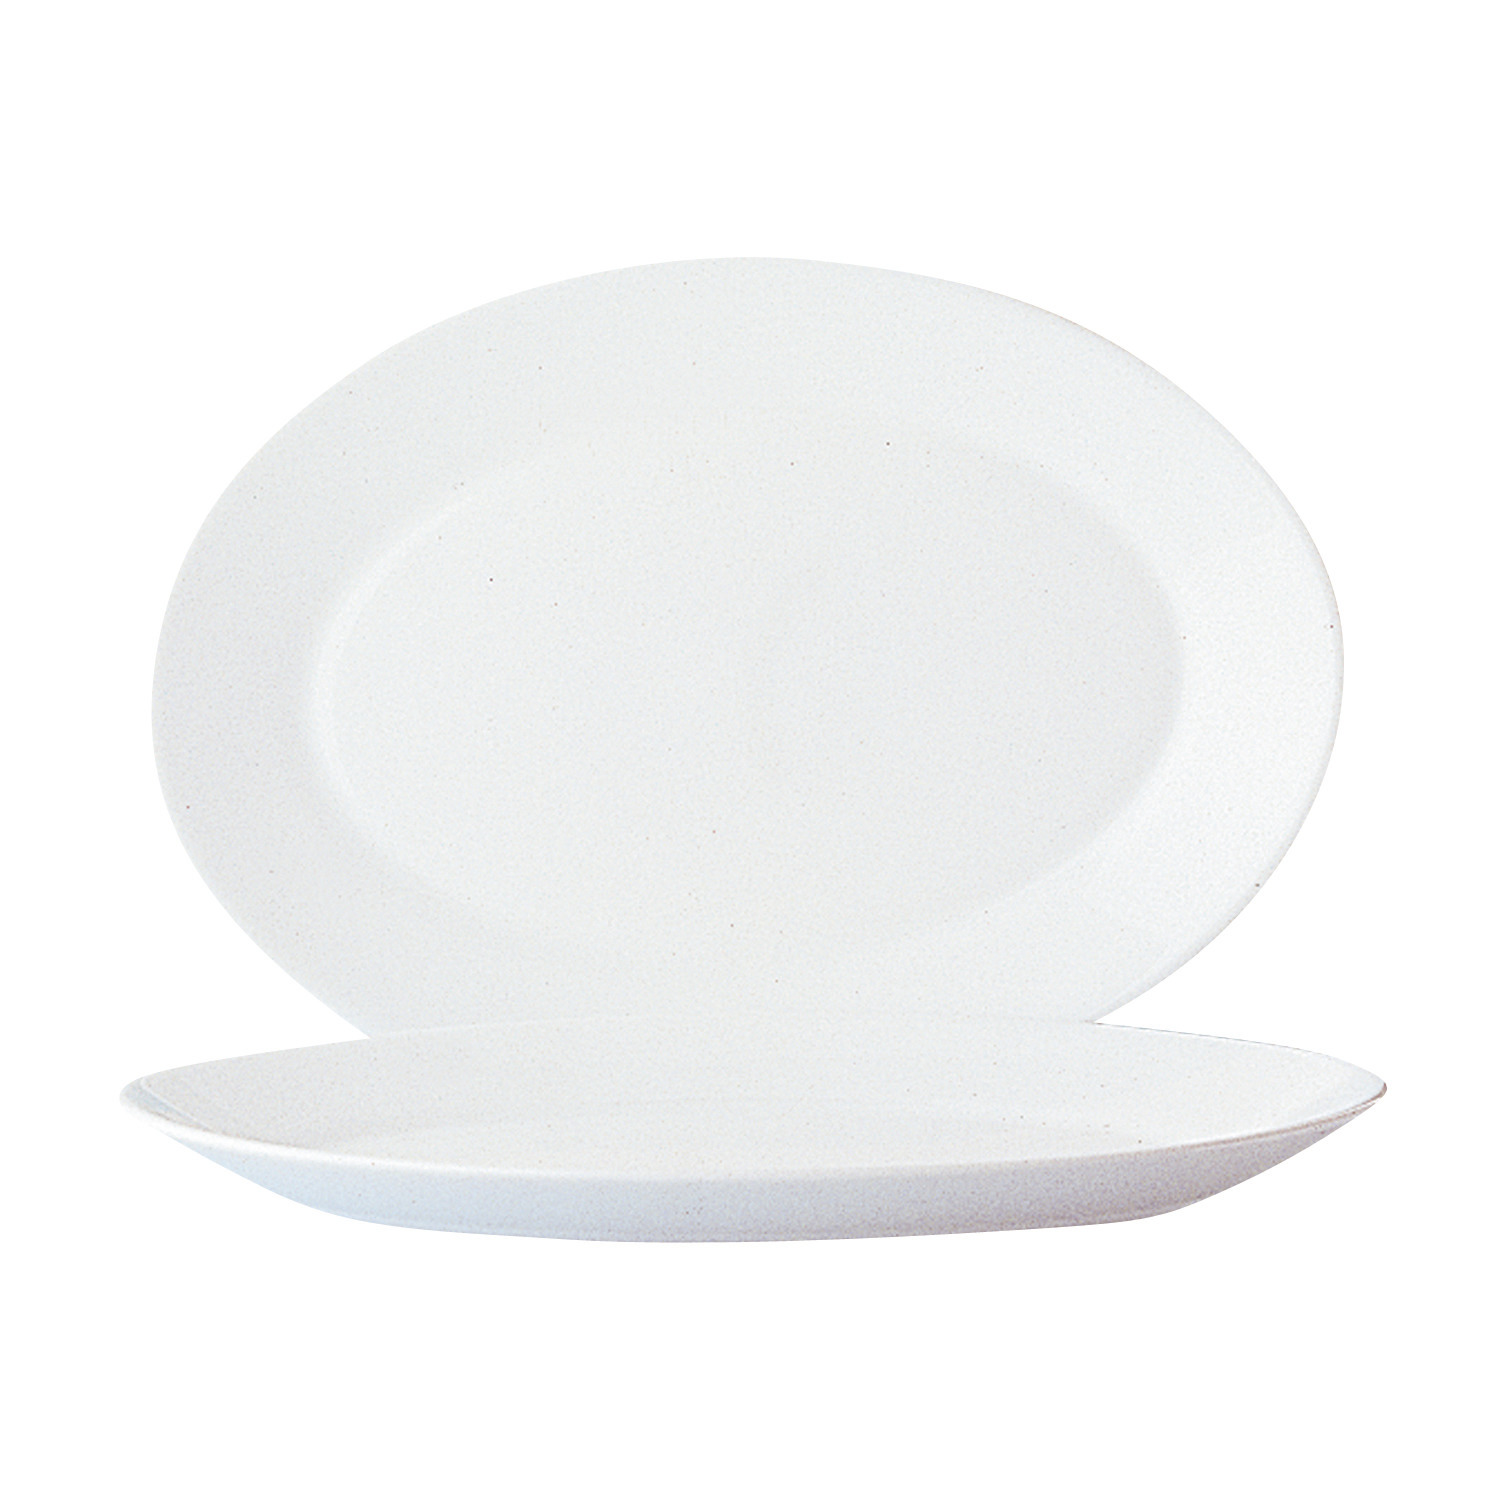 Platte oval 295 x 209 mm uni weiß